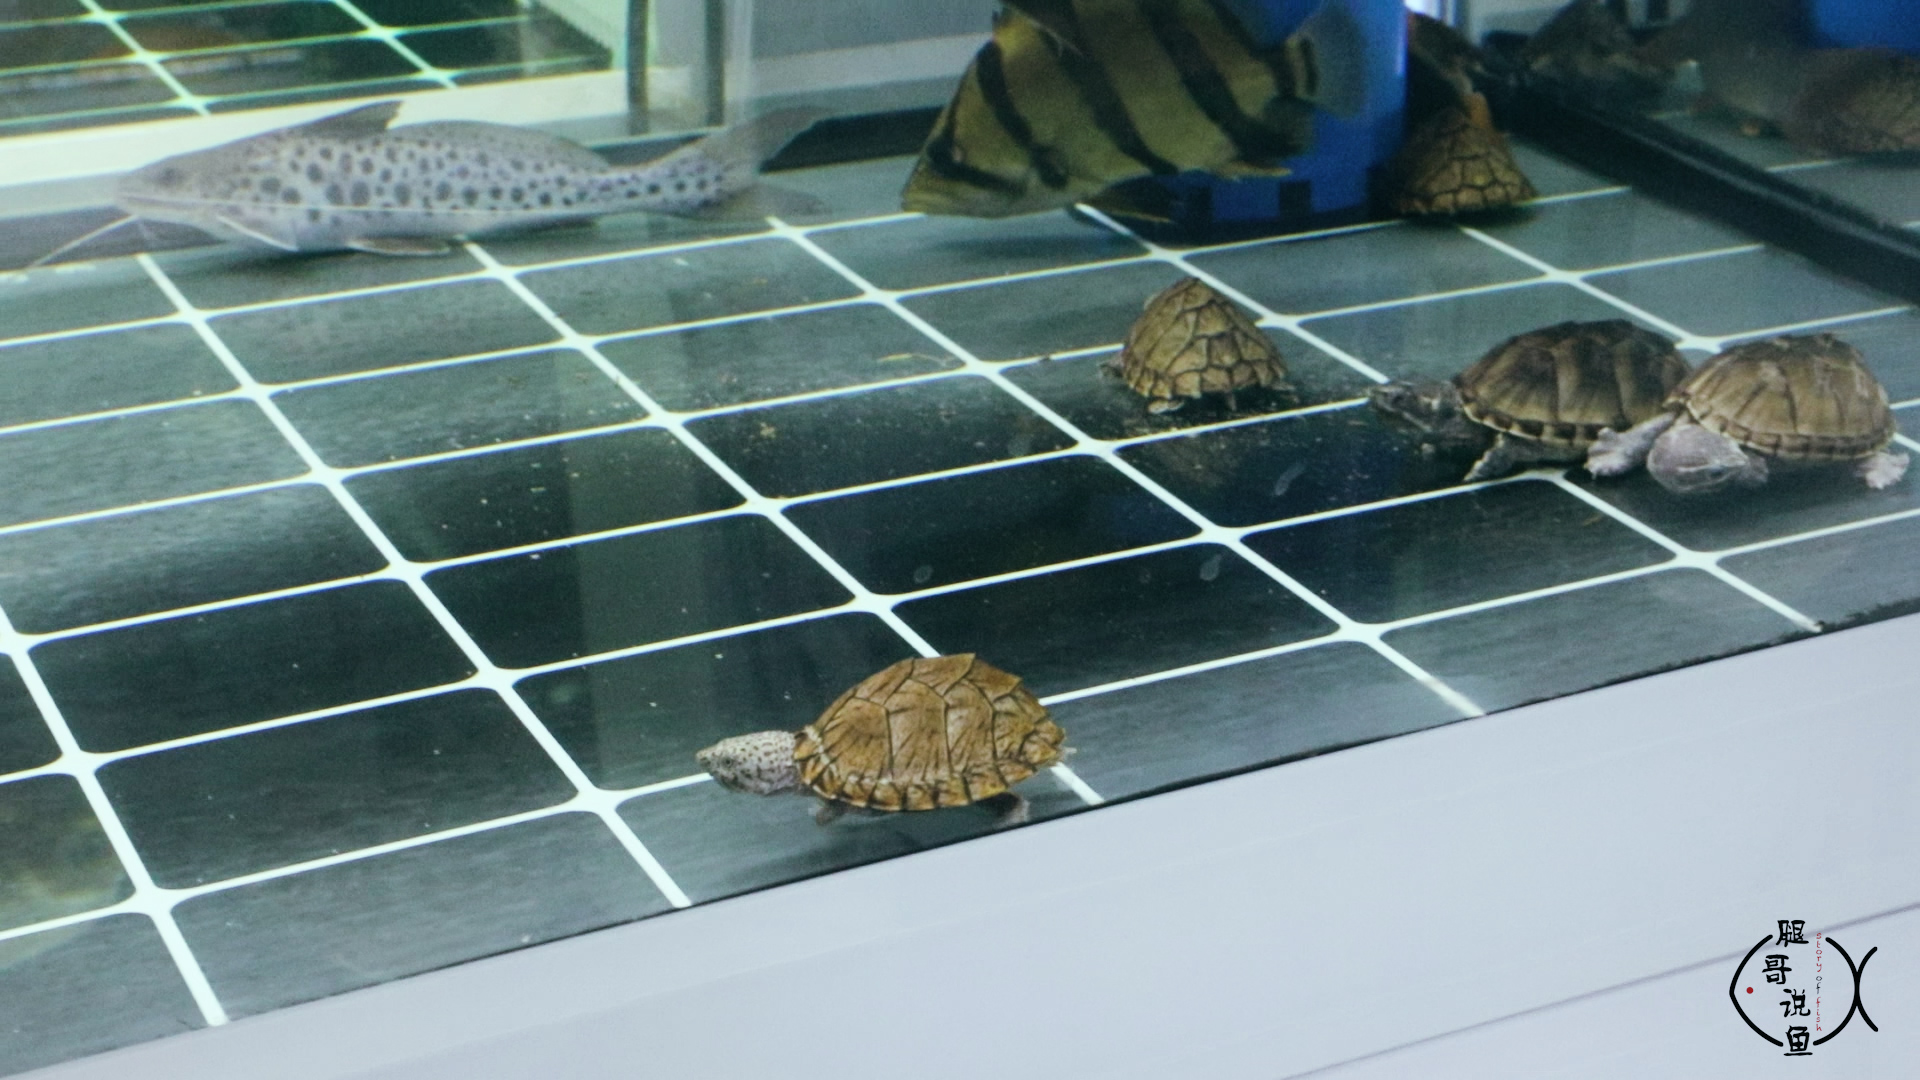 你知道什么乌龟能养在鱼缸里吗?网红剃刀龟就可以混养在大鱼缸里